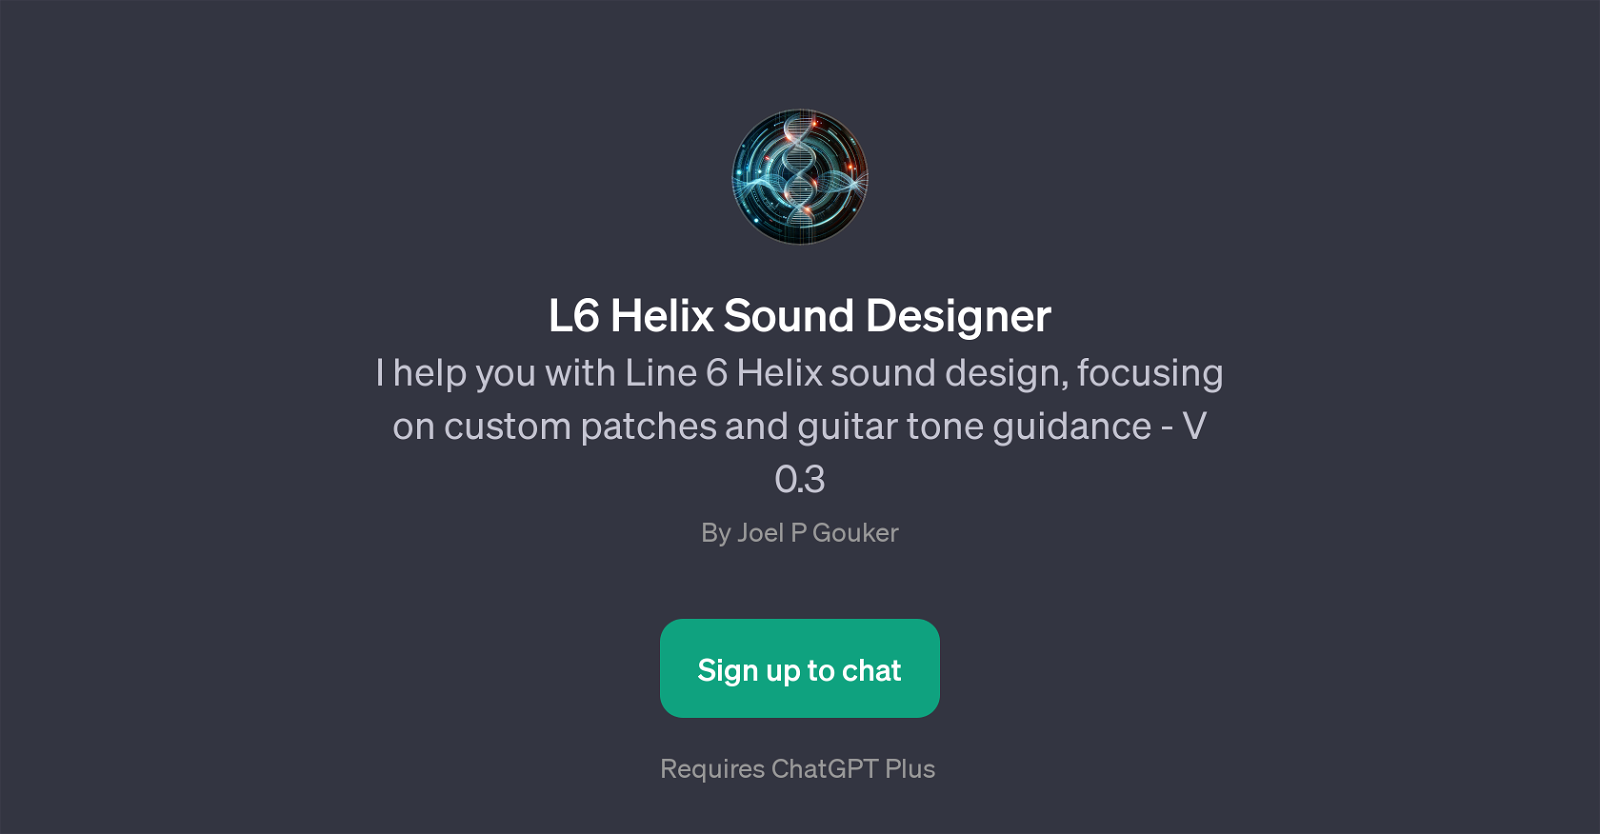 L6 Helix Sound Designer website